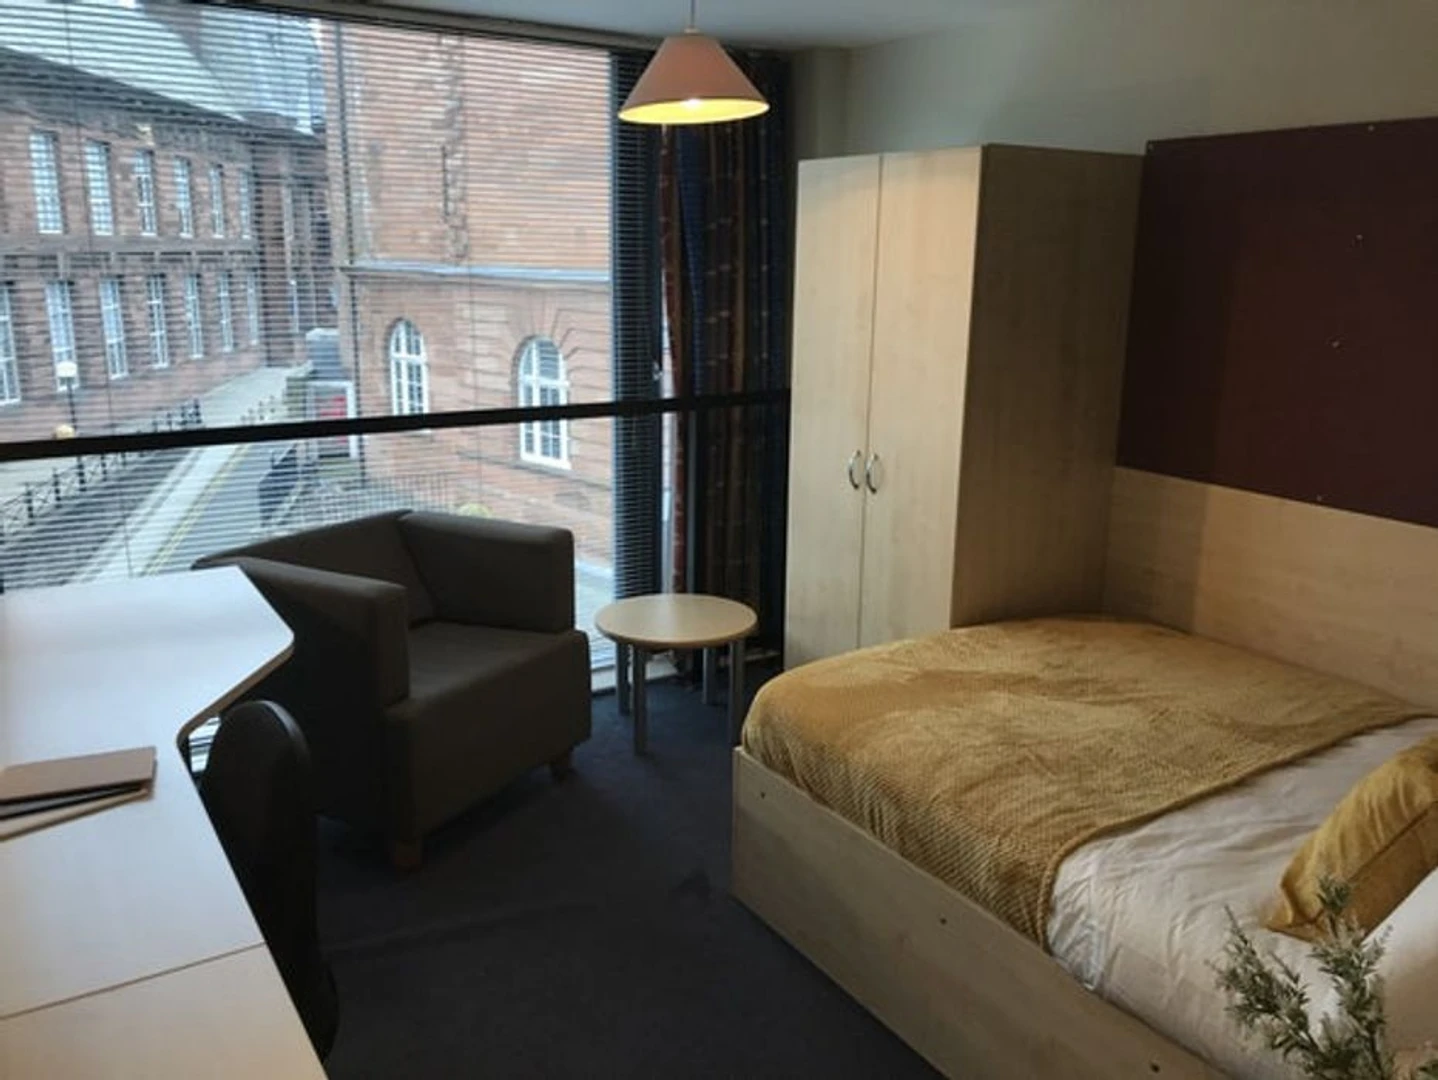 Edinburgh de çift kişilik yataklı kiralık oda